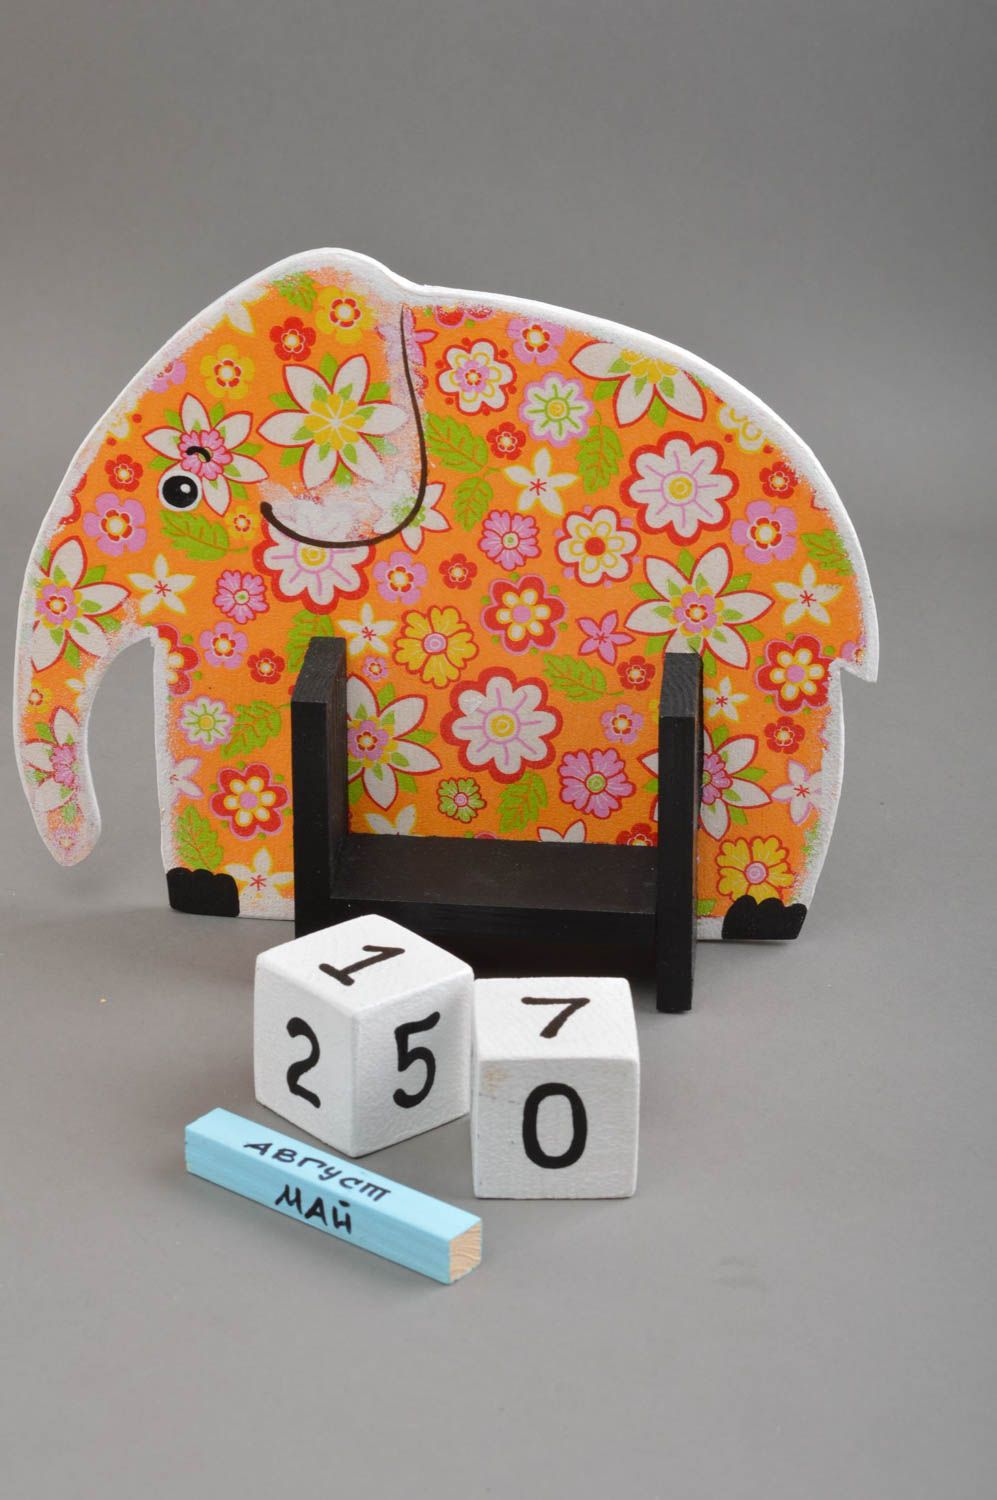 Handmade calendar for kids unusual toy elephant stylish table decor ideas photo 3